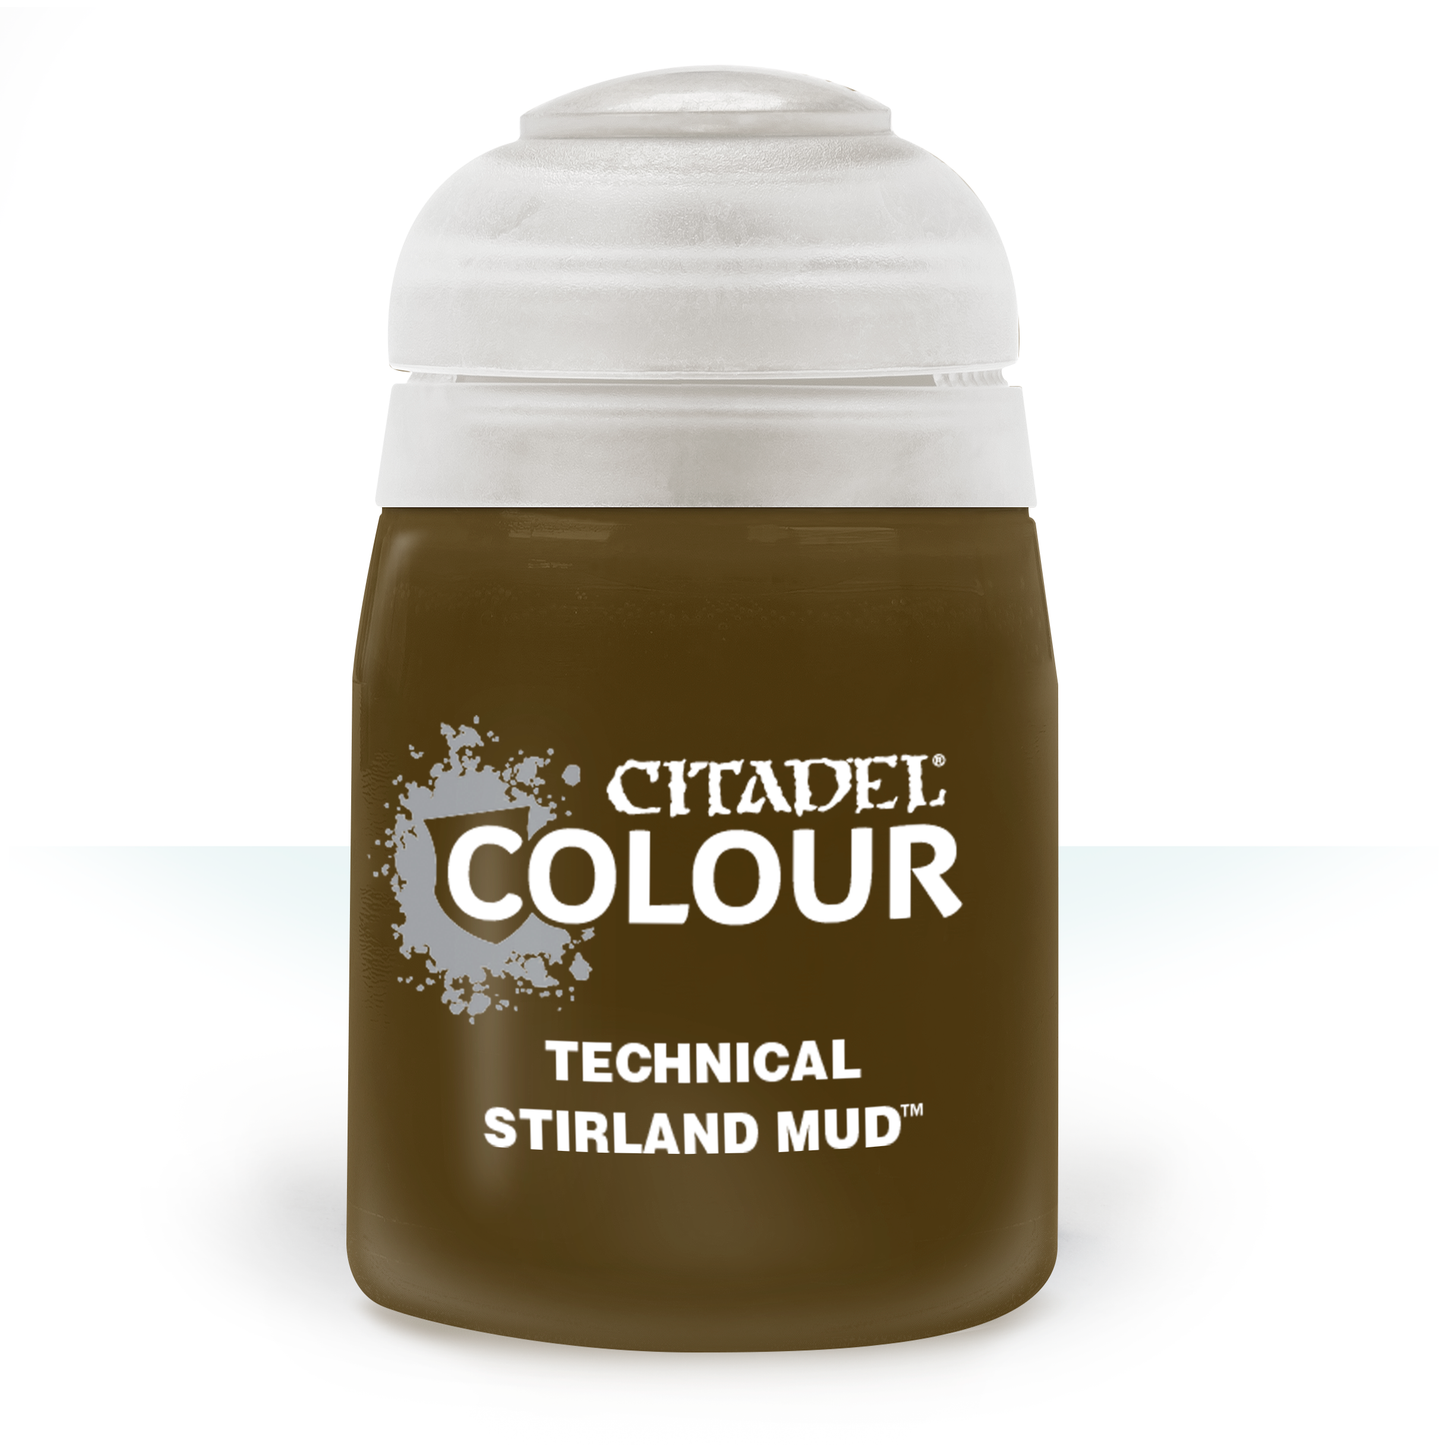 Τεχνικά: Stirland Mud (24ml)